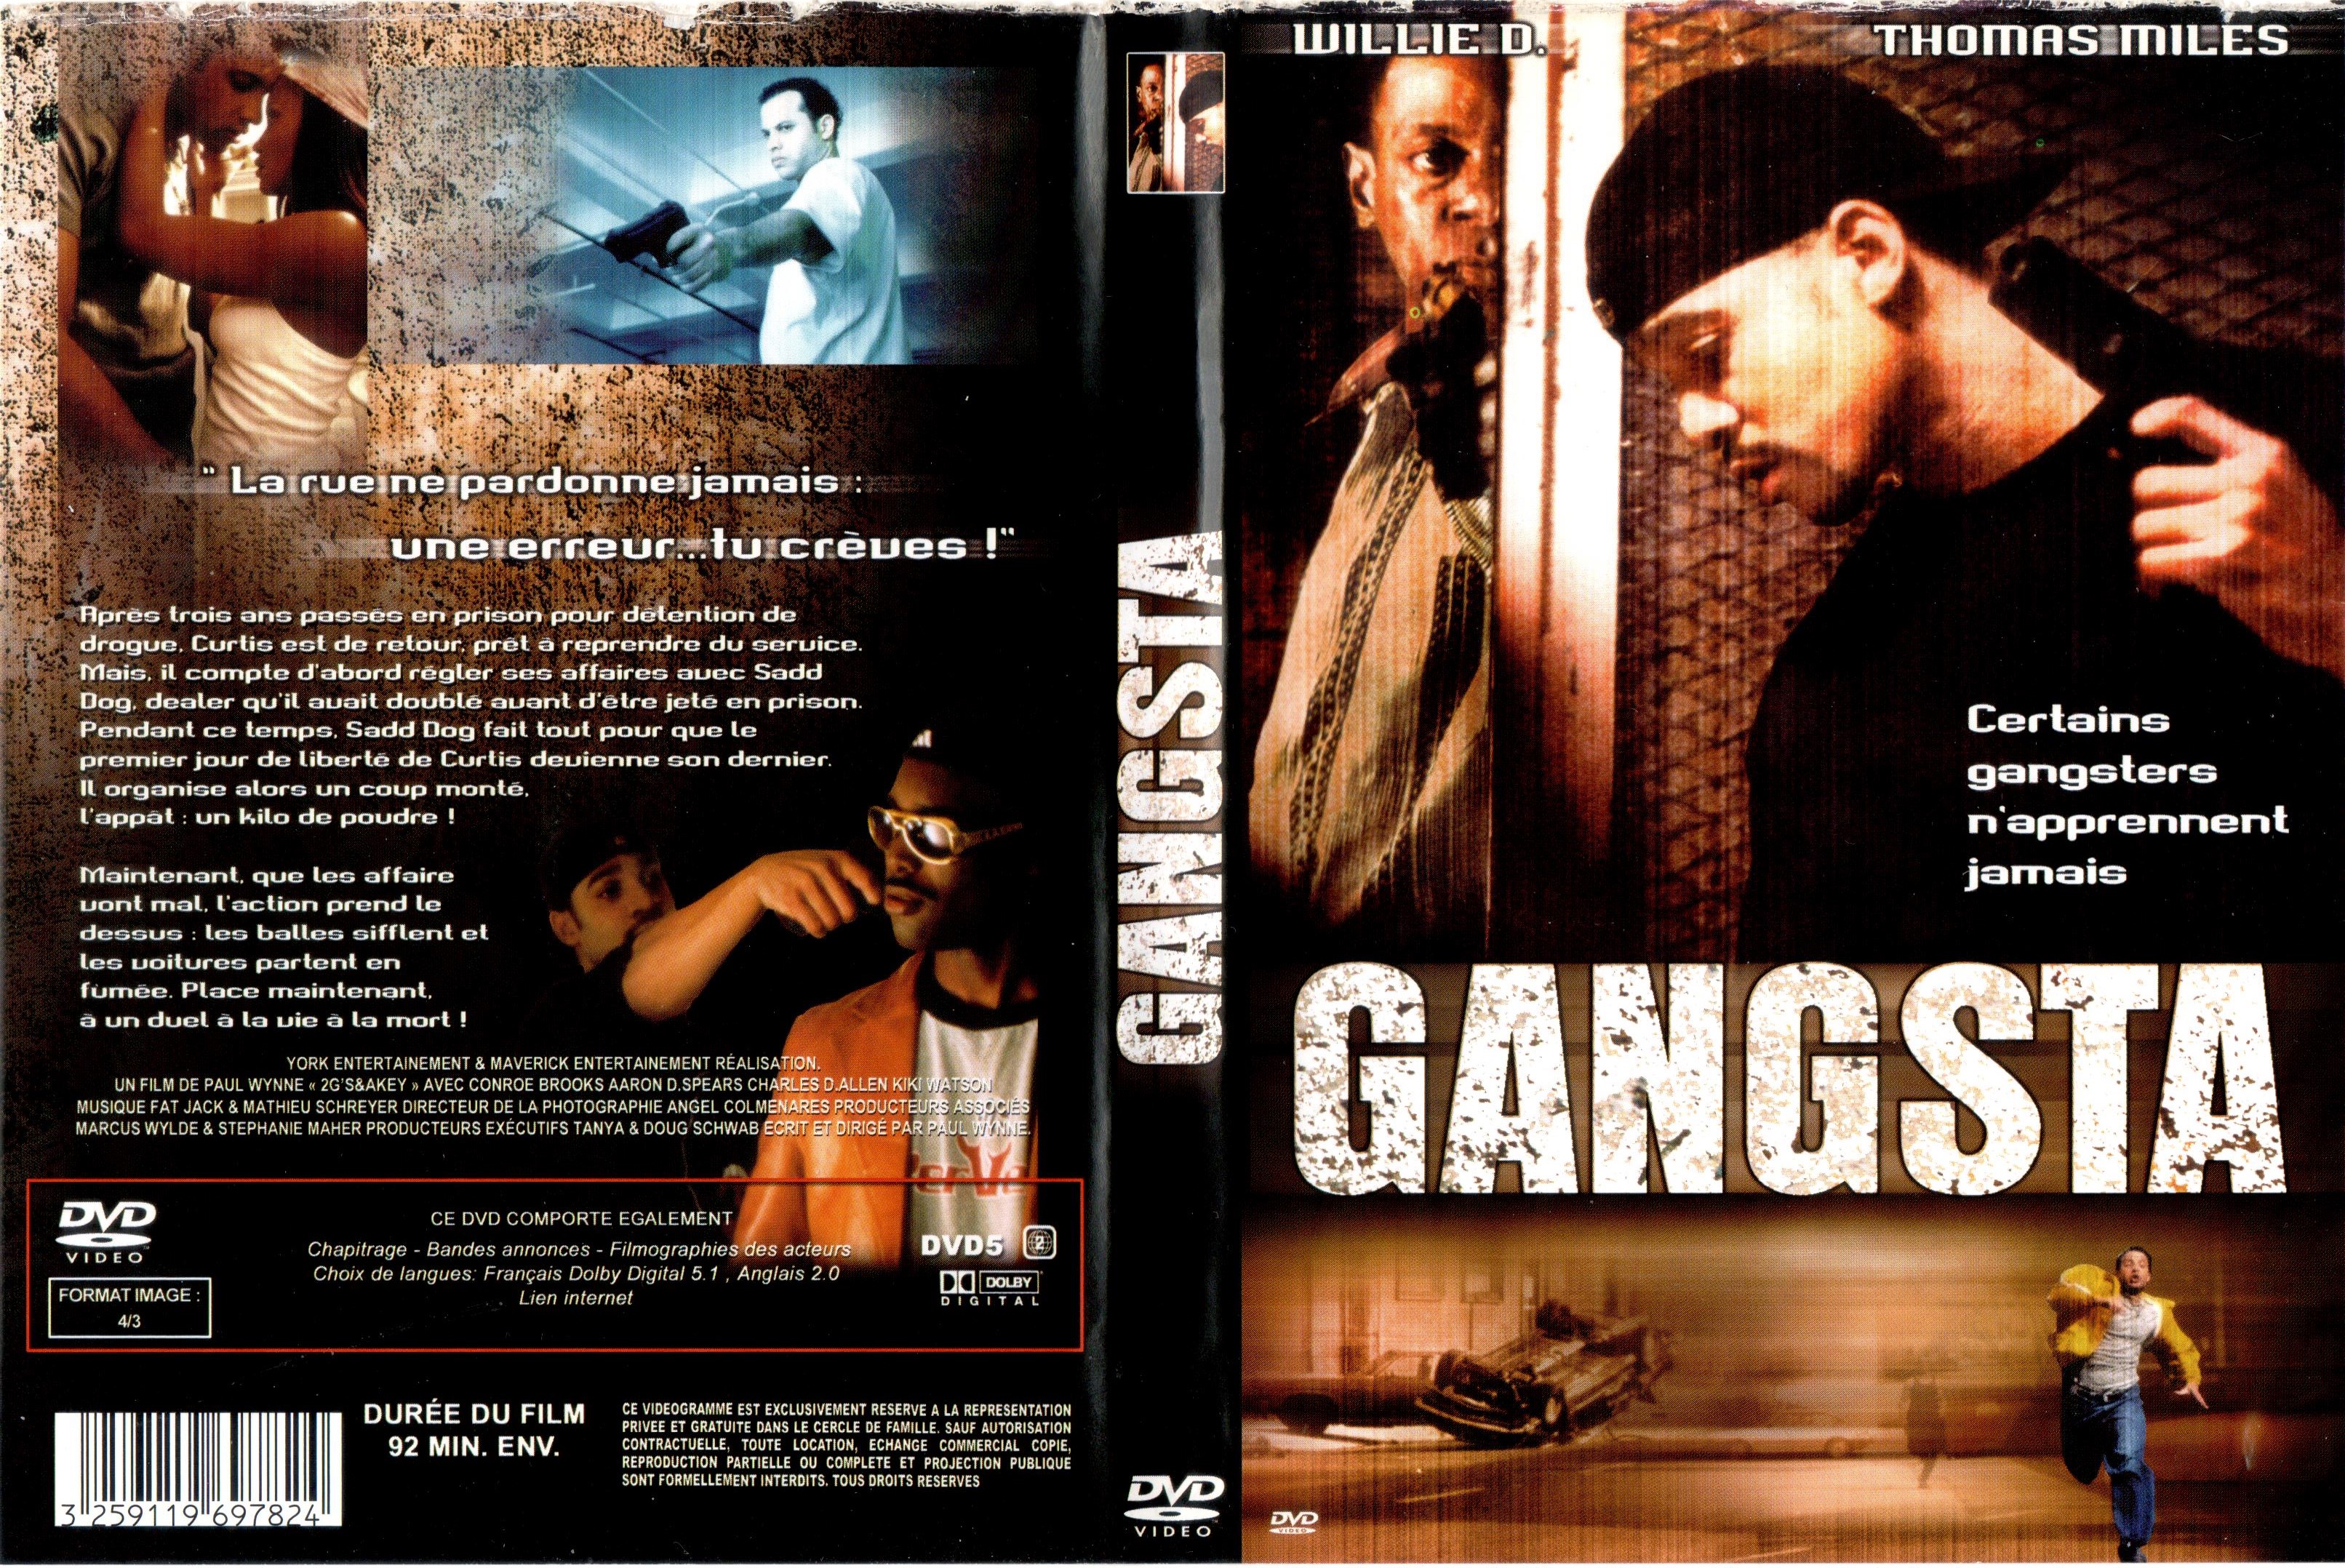 Jaquette DVD Gangsta